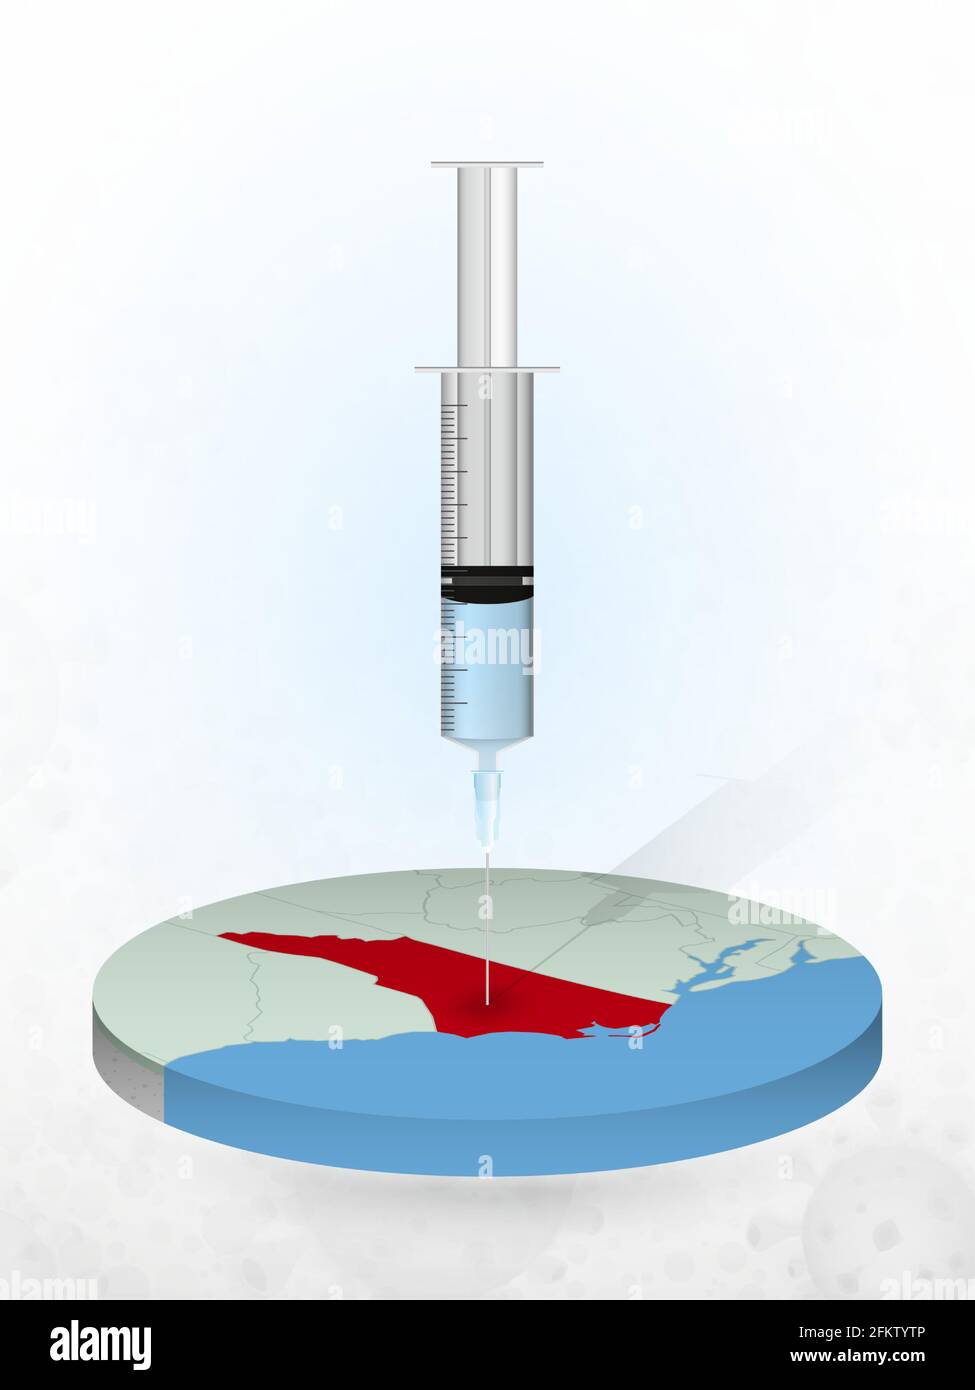 Vaccinazione della Carolina del Nord, iniezione di una siringa in una mappa della Carolina del Nord. Illustrazione vettoriale di una siringa con vaccino e mappa. Illustrazione Vettoriale